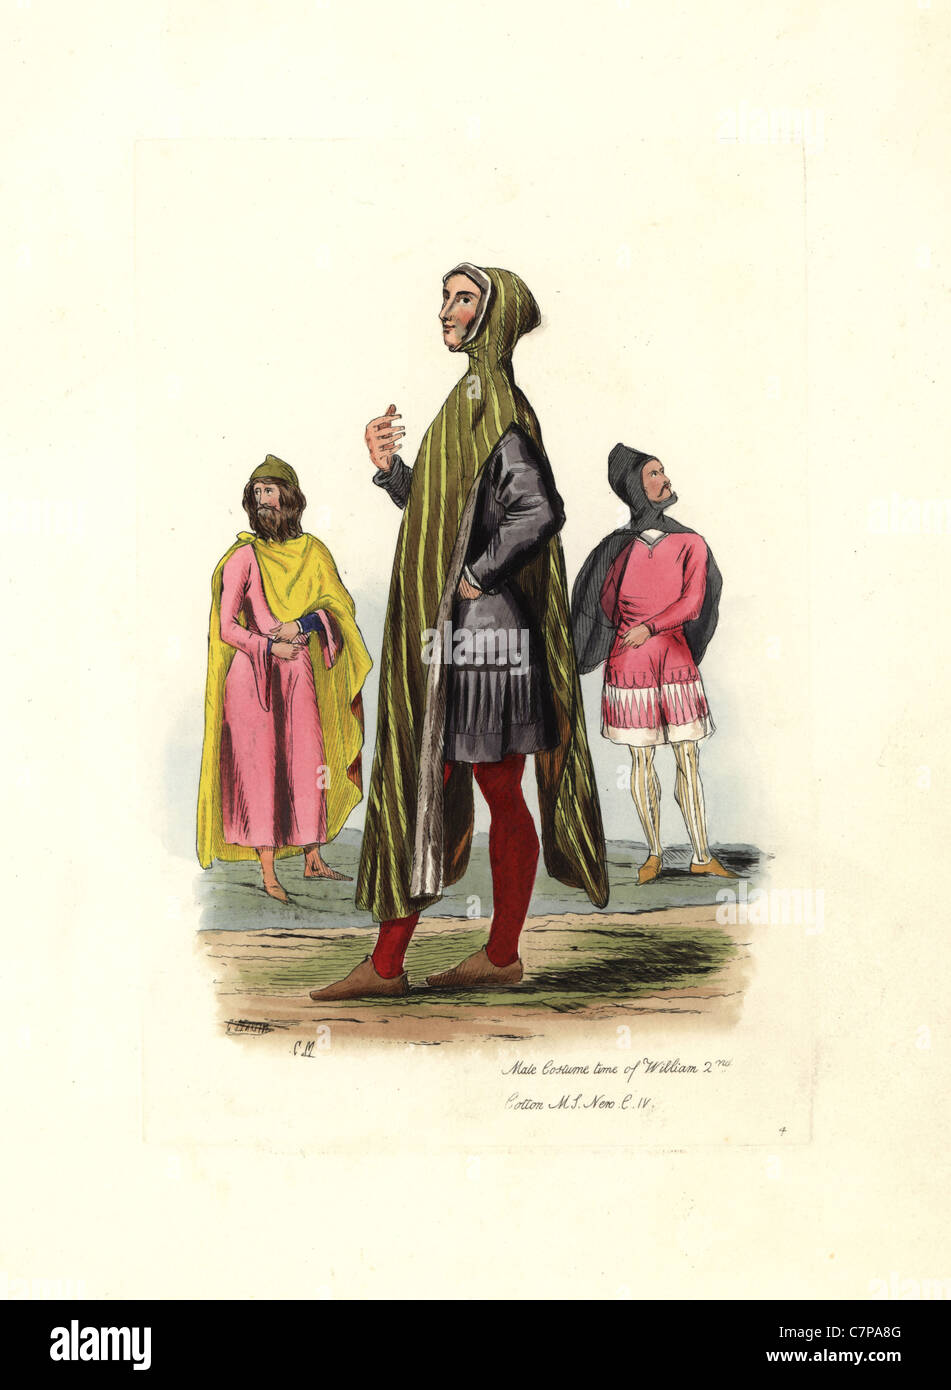 Costume maschile del tempo di William 2a. Foto Stock